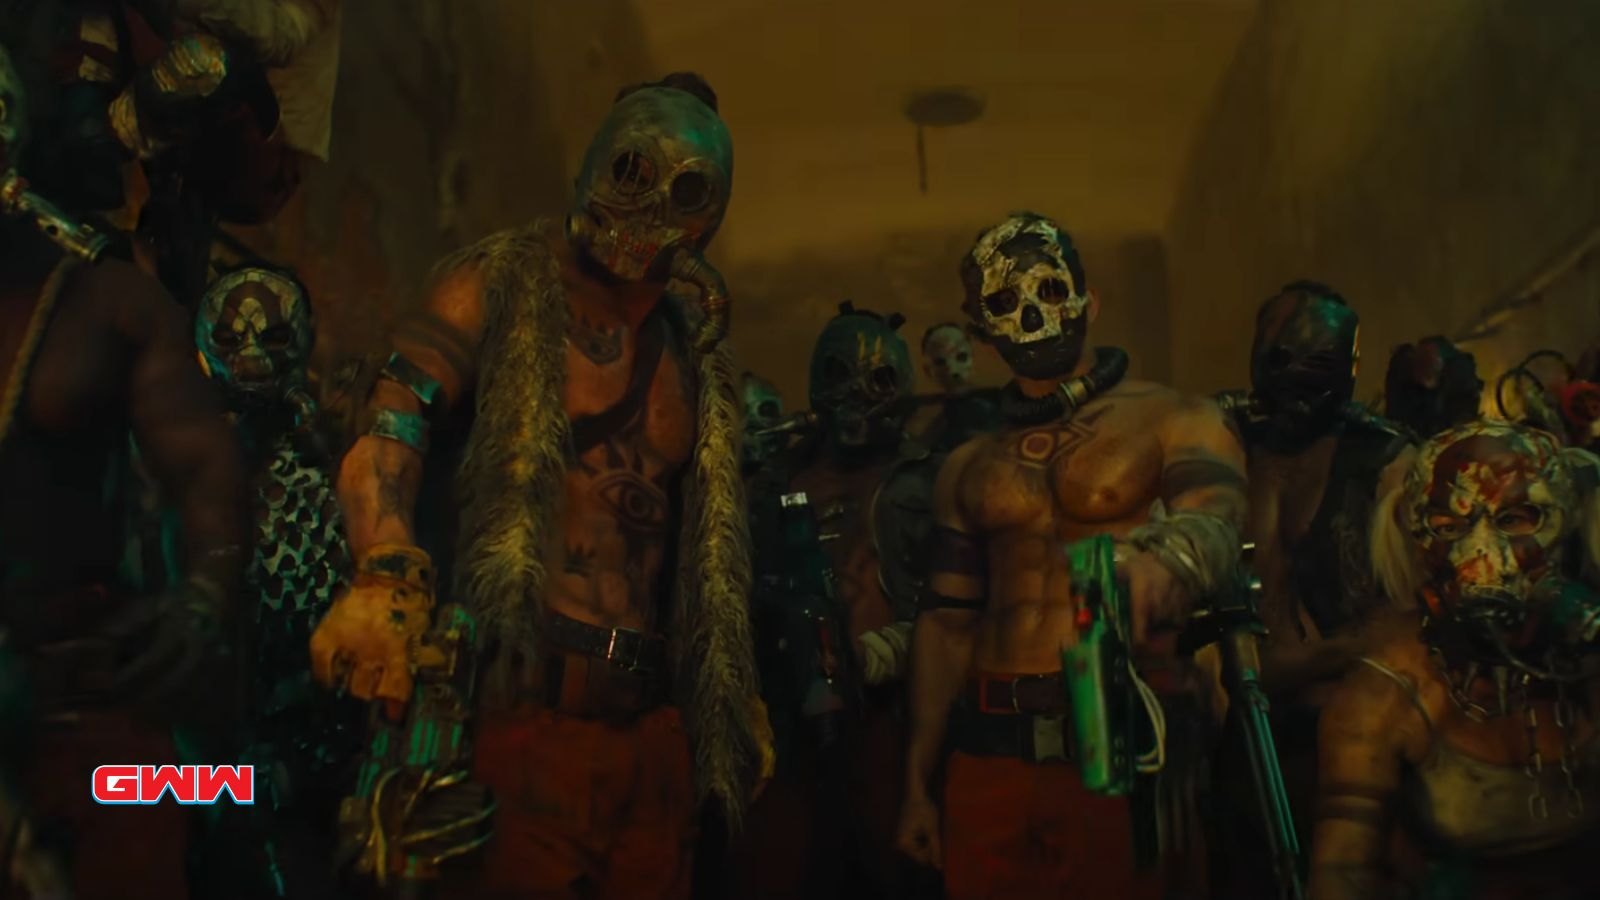 Bandidos peligrosos con máscaras, elenco de la película Borderlands.